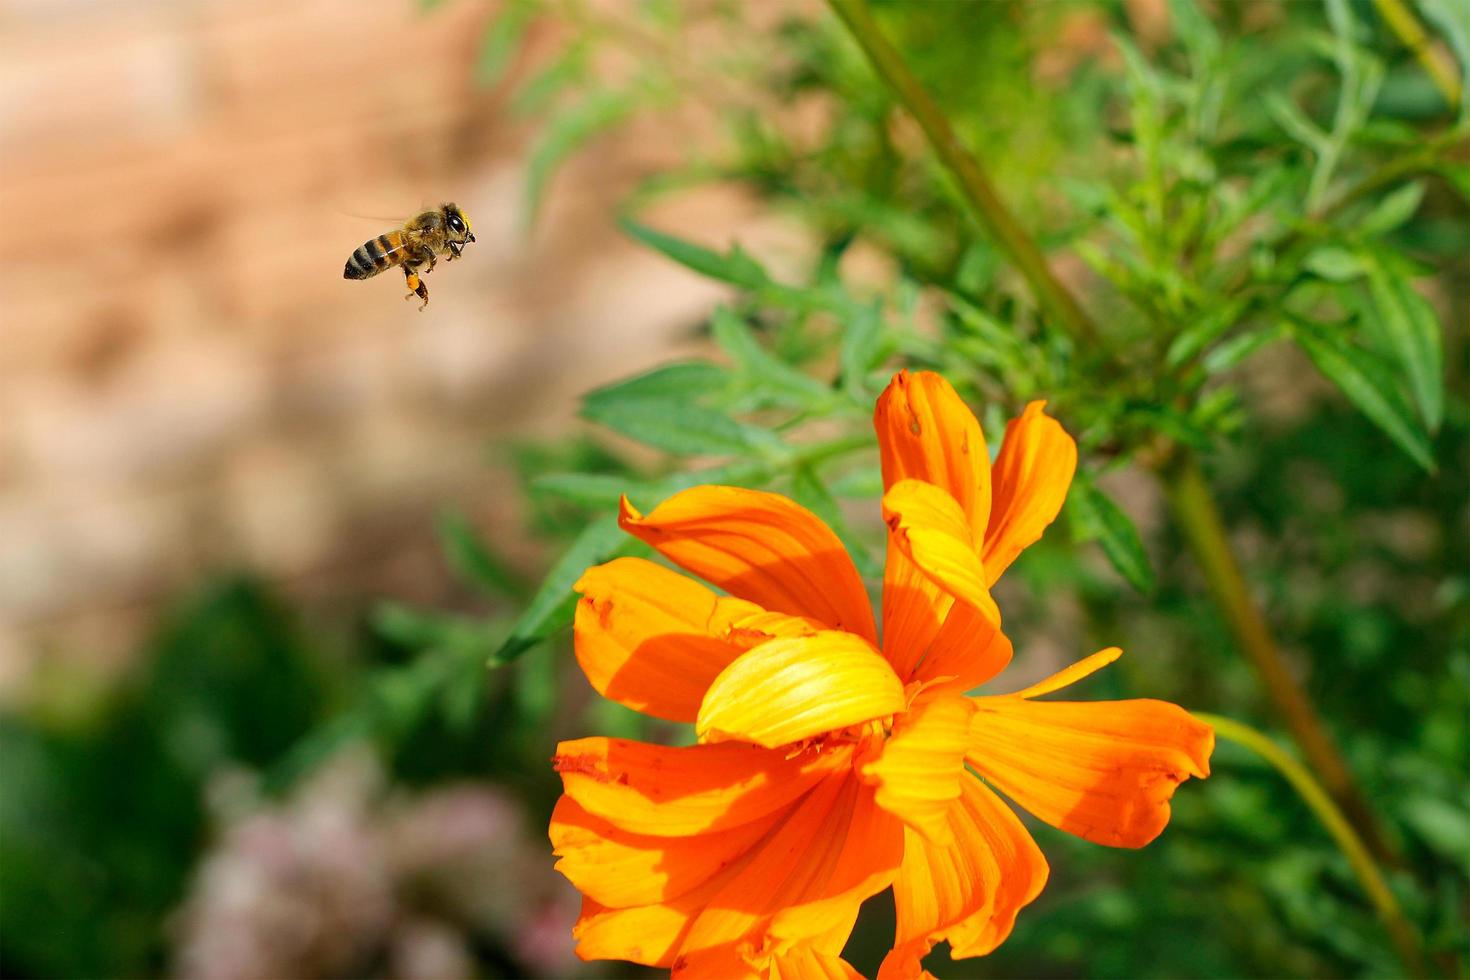 abelha operária closeup voando sobre flor amarela em lindo jardim para polinização foto